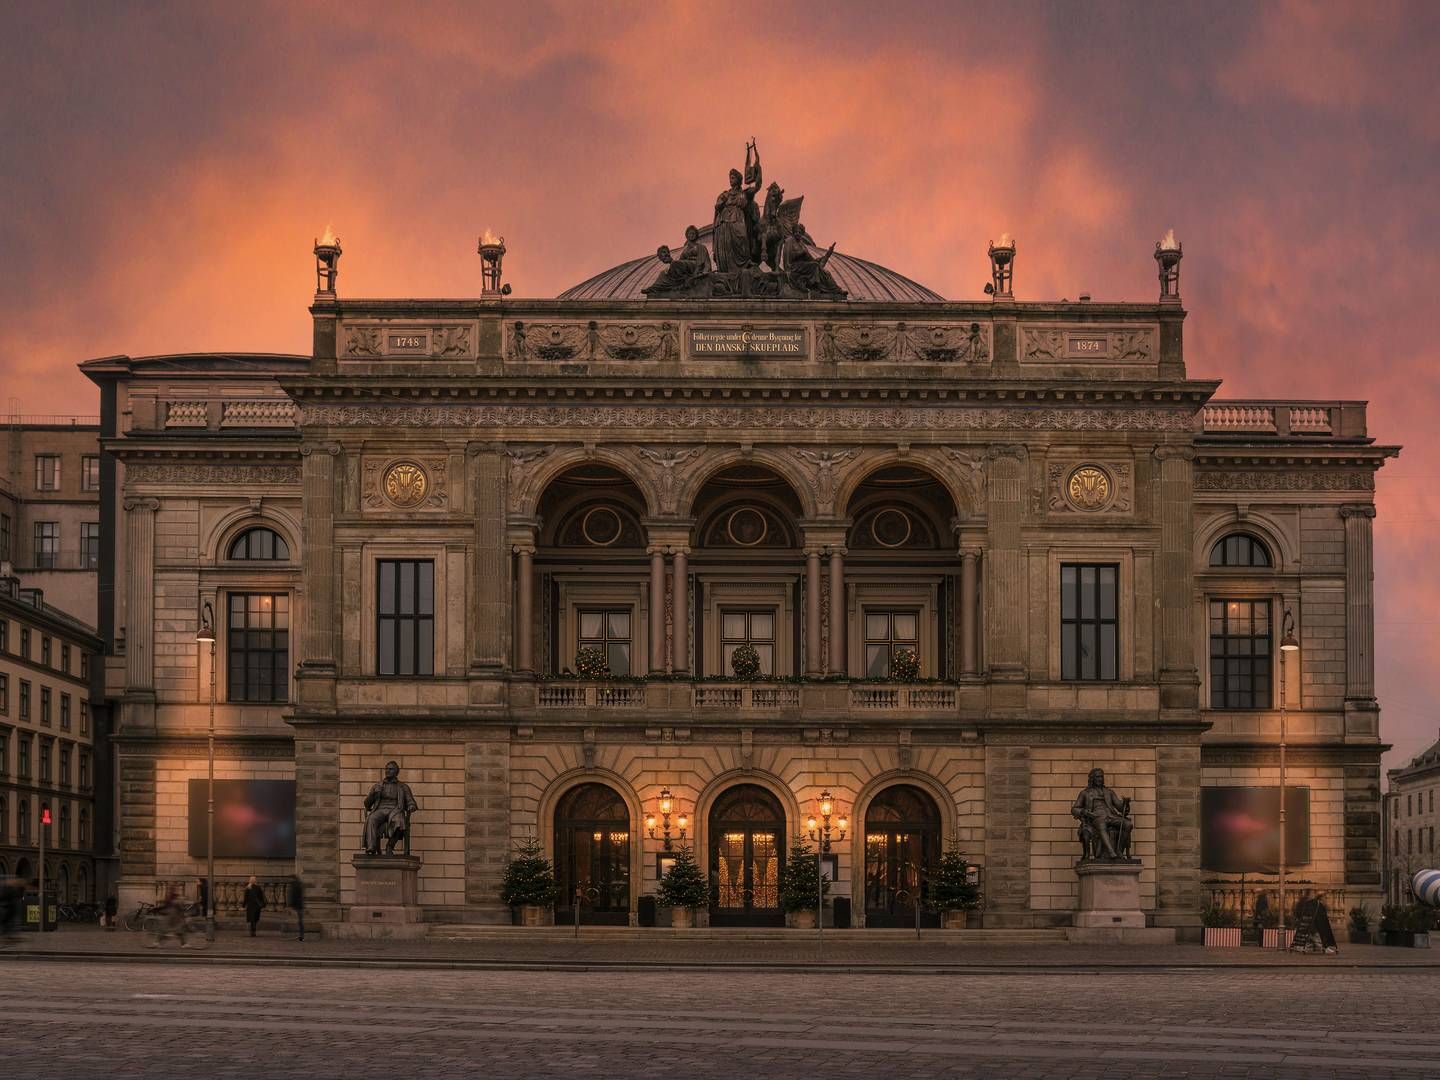 Det har været dyrt at gøre rent efter publikum i bl.a. Det Kongelige Teater i København, der siden maj 2022 har modtaget serviceydelser fra et privat selskab. | Foto: Camilla Winther / Det Kongelige Teater